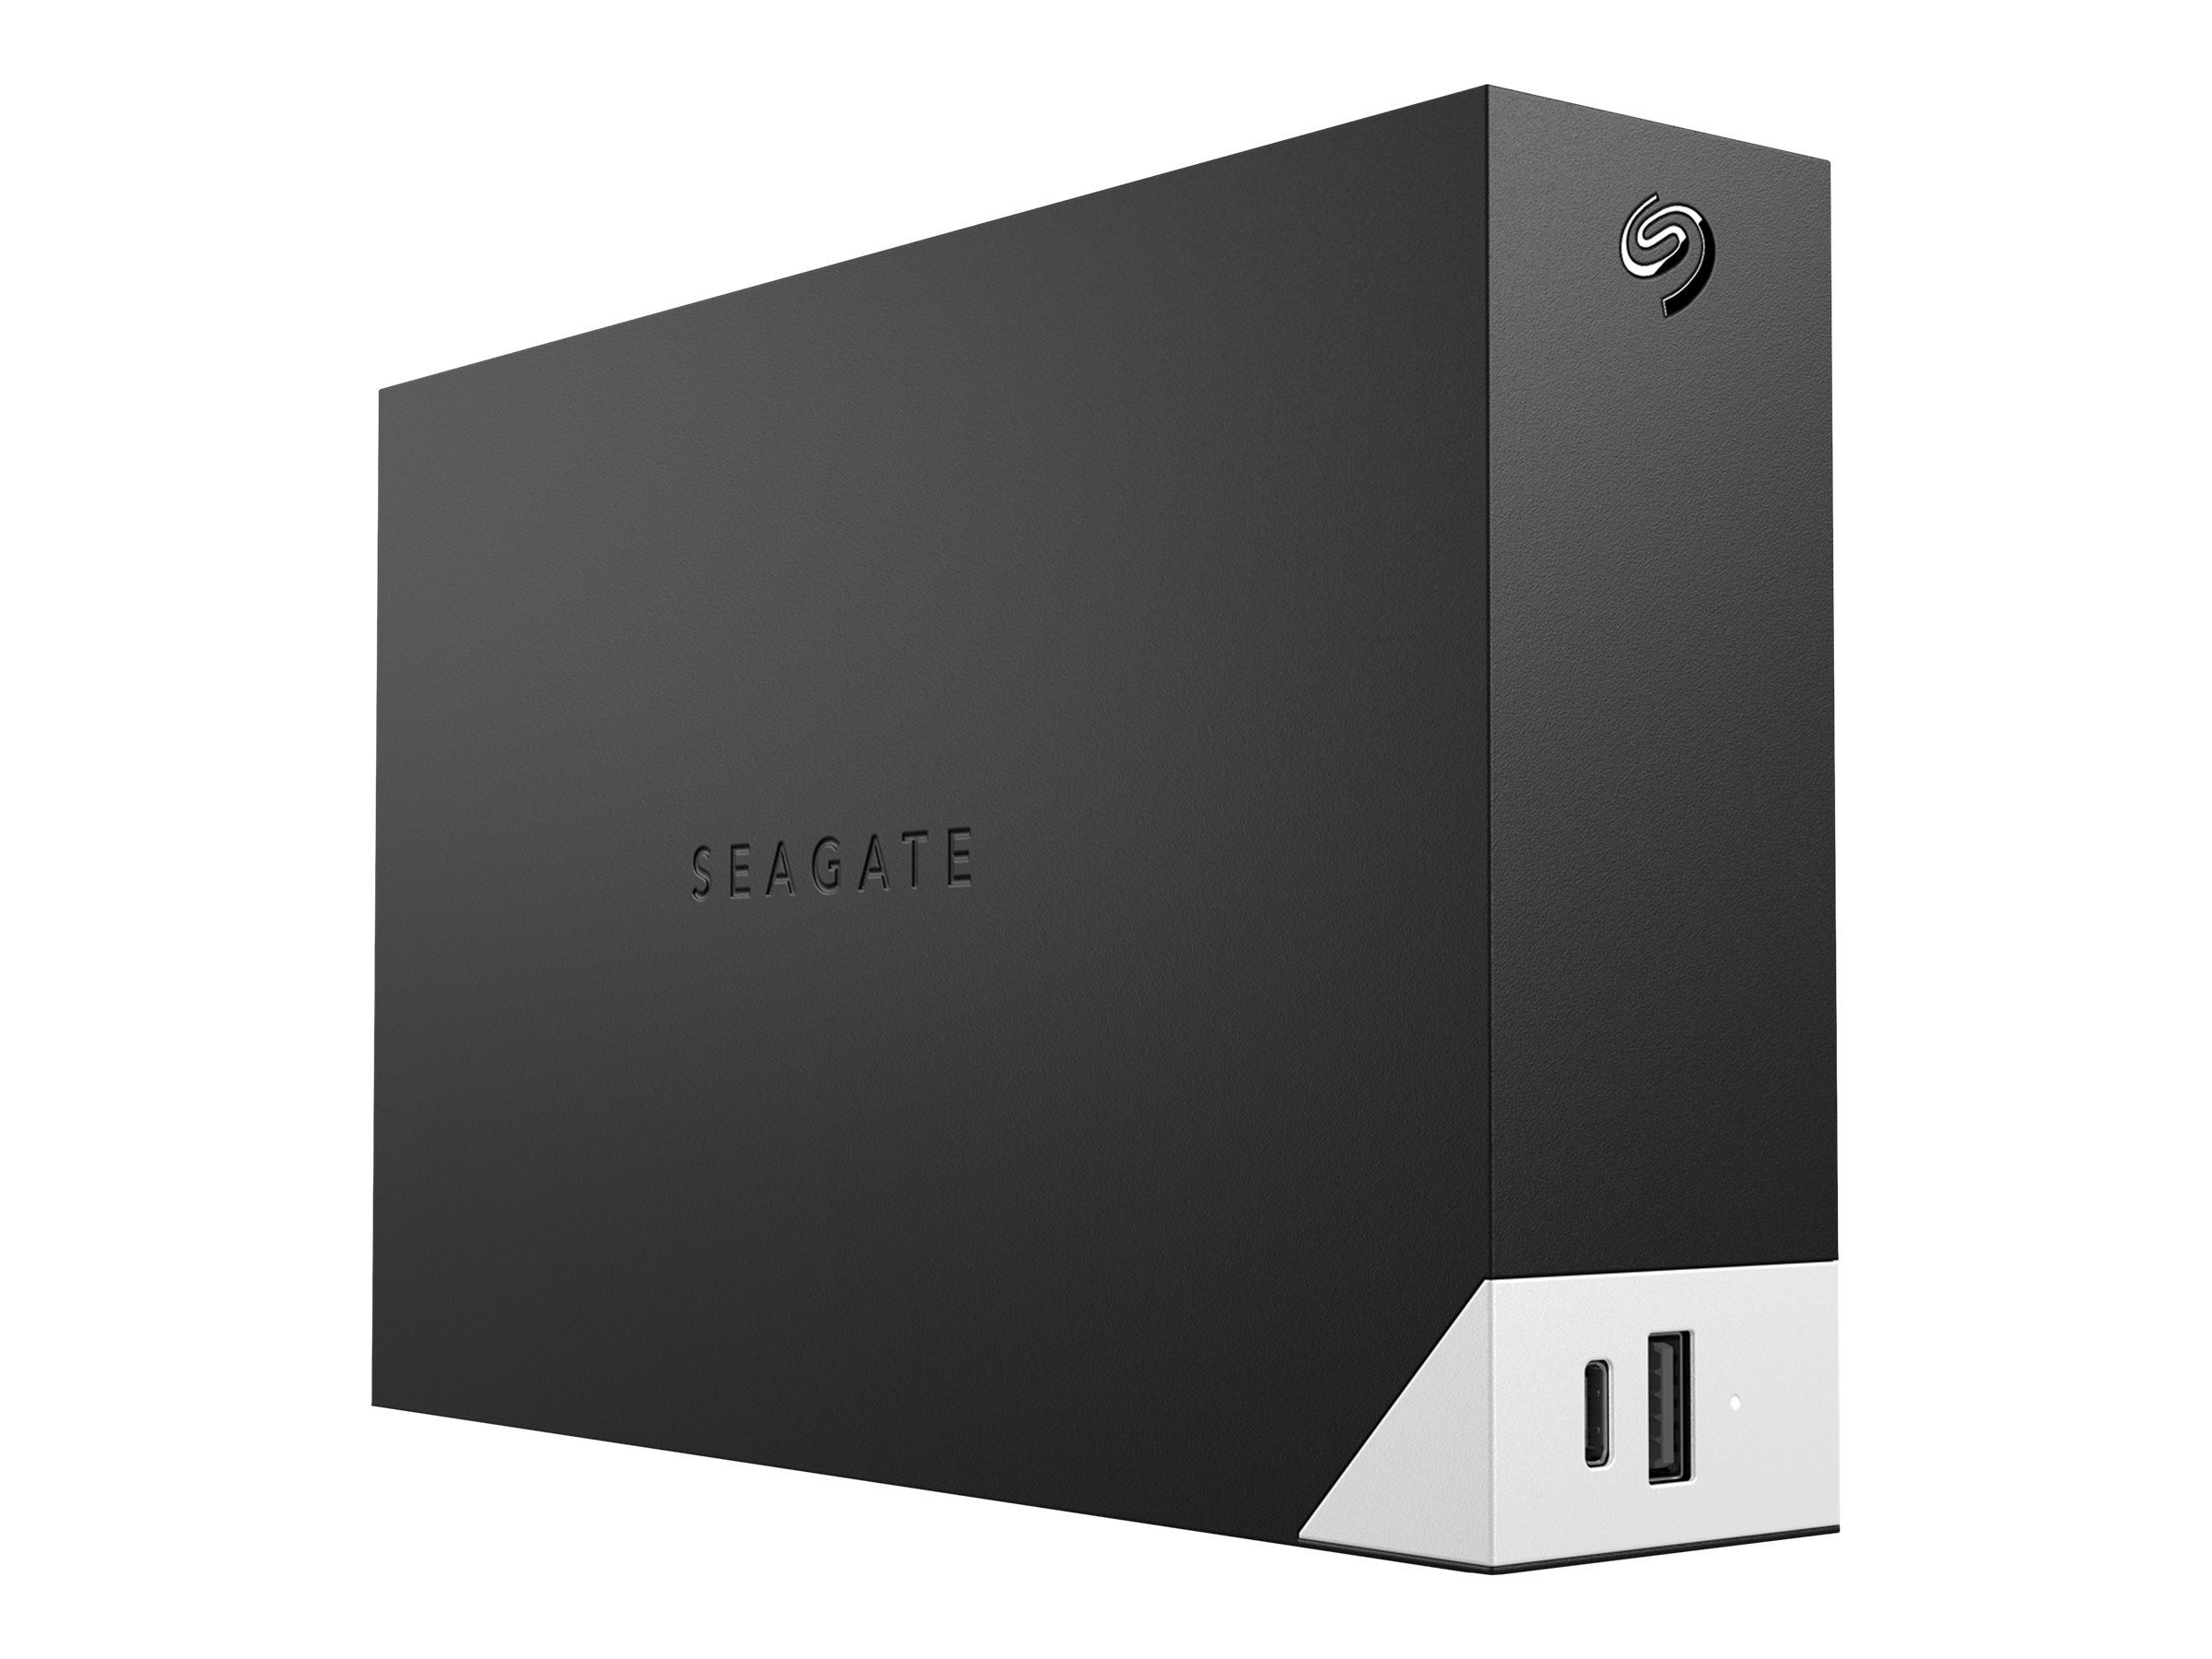 Seagate One Touch with hub STLC12000400 - Disque dur - 12 To - externe (de bureau) - USB 3.0 - noir - avec Seagate Rescue Data Recovery - STLC12000400 - Disques durs externes